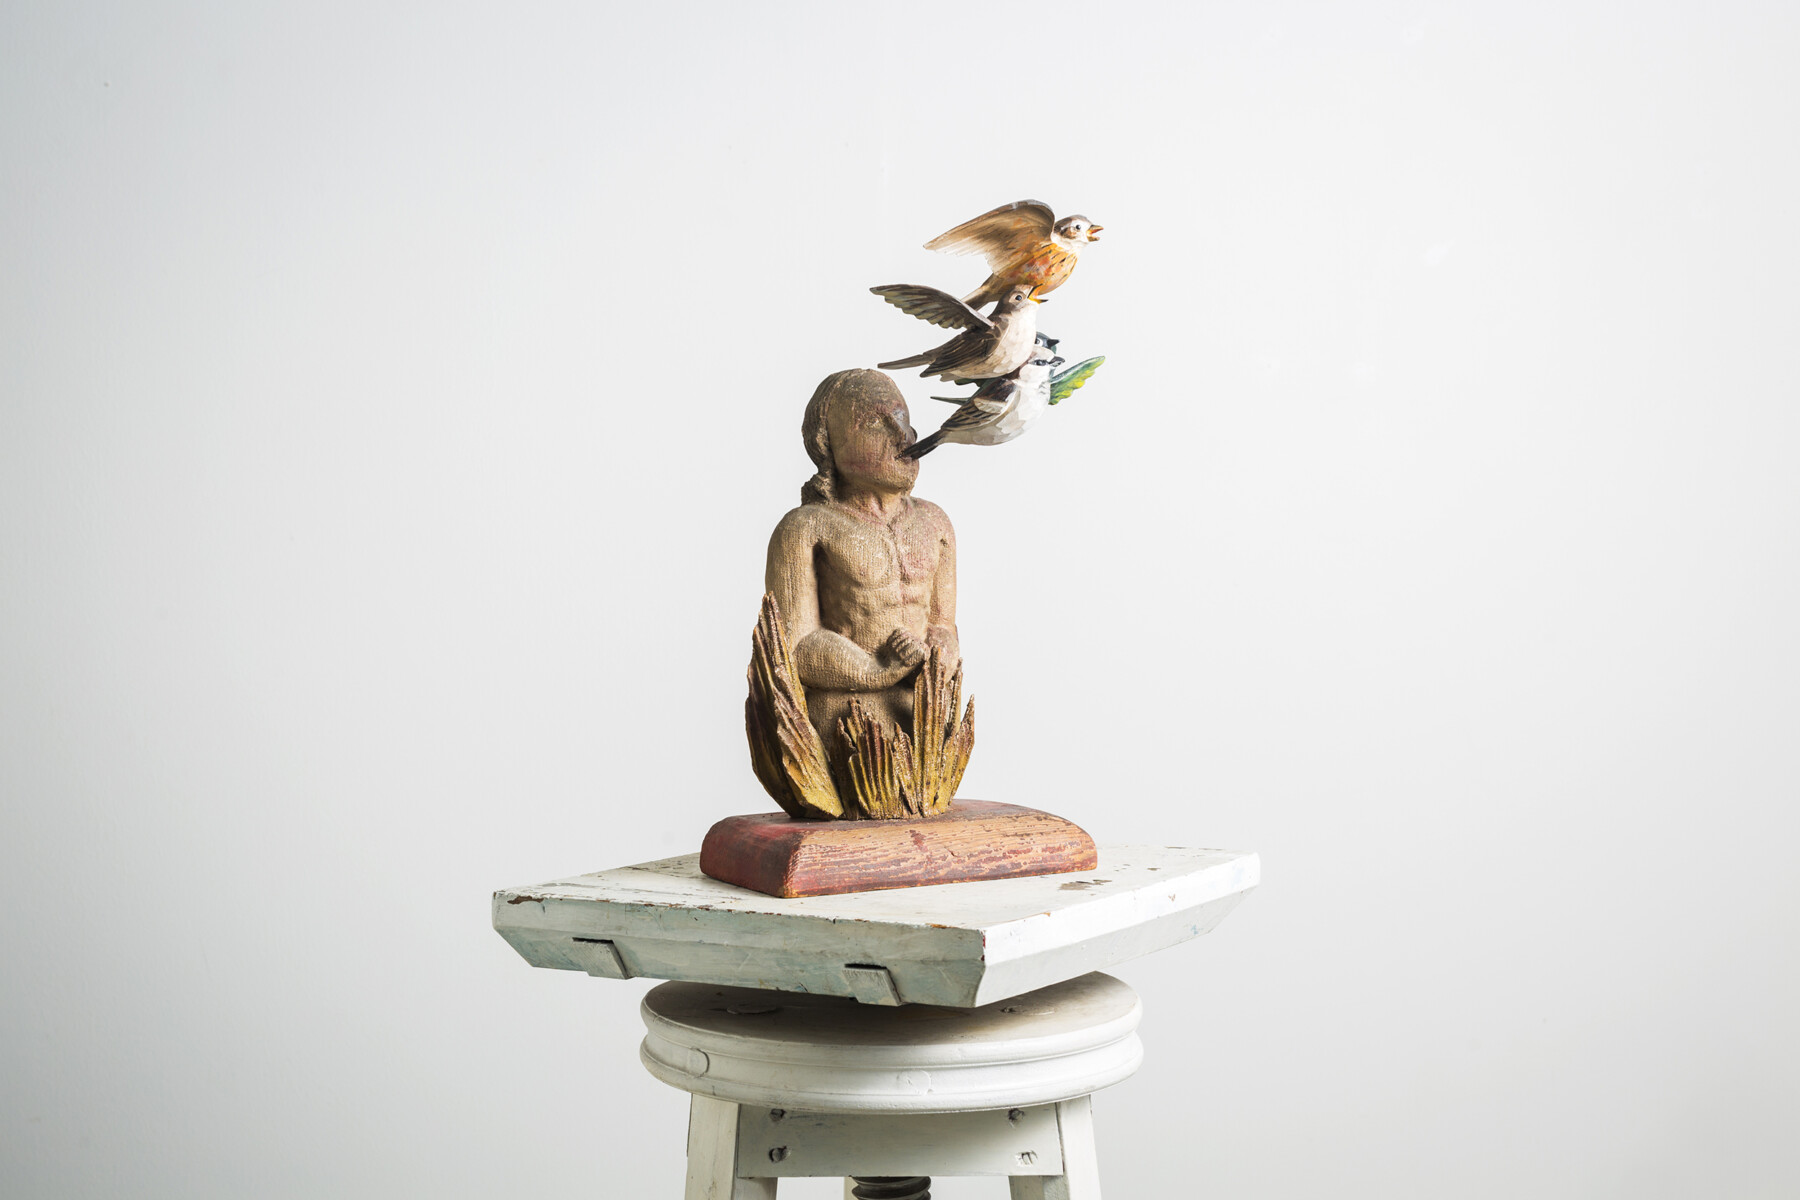 На постаменте установлена скульптура человека, над головой которого летает или, возможно, из его головы которого вылетает несколько разноцветных птиц.